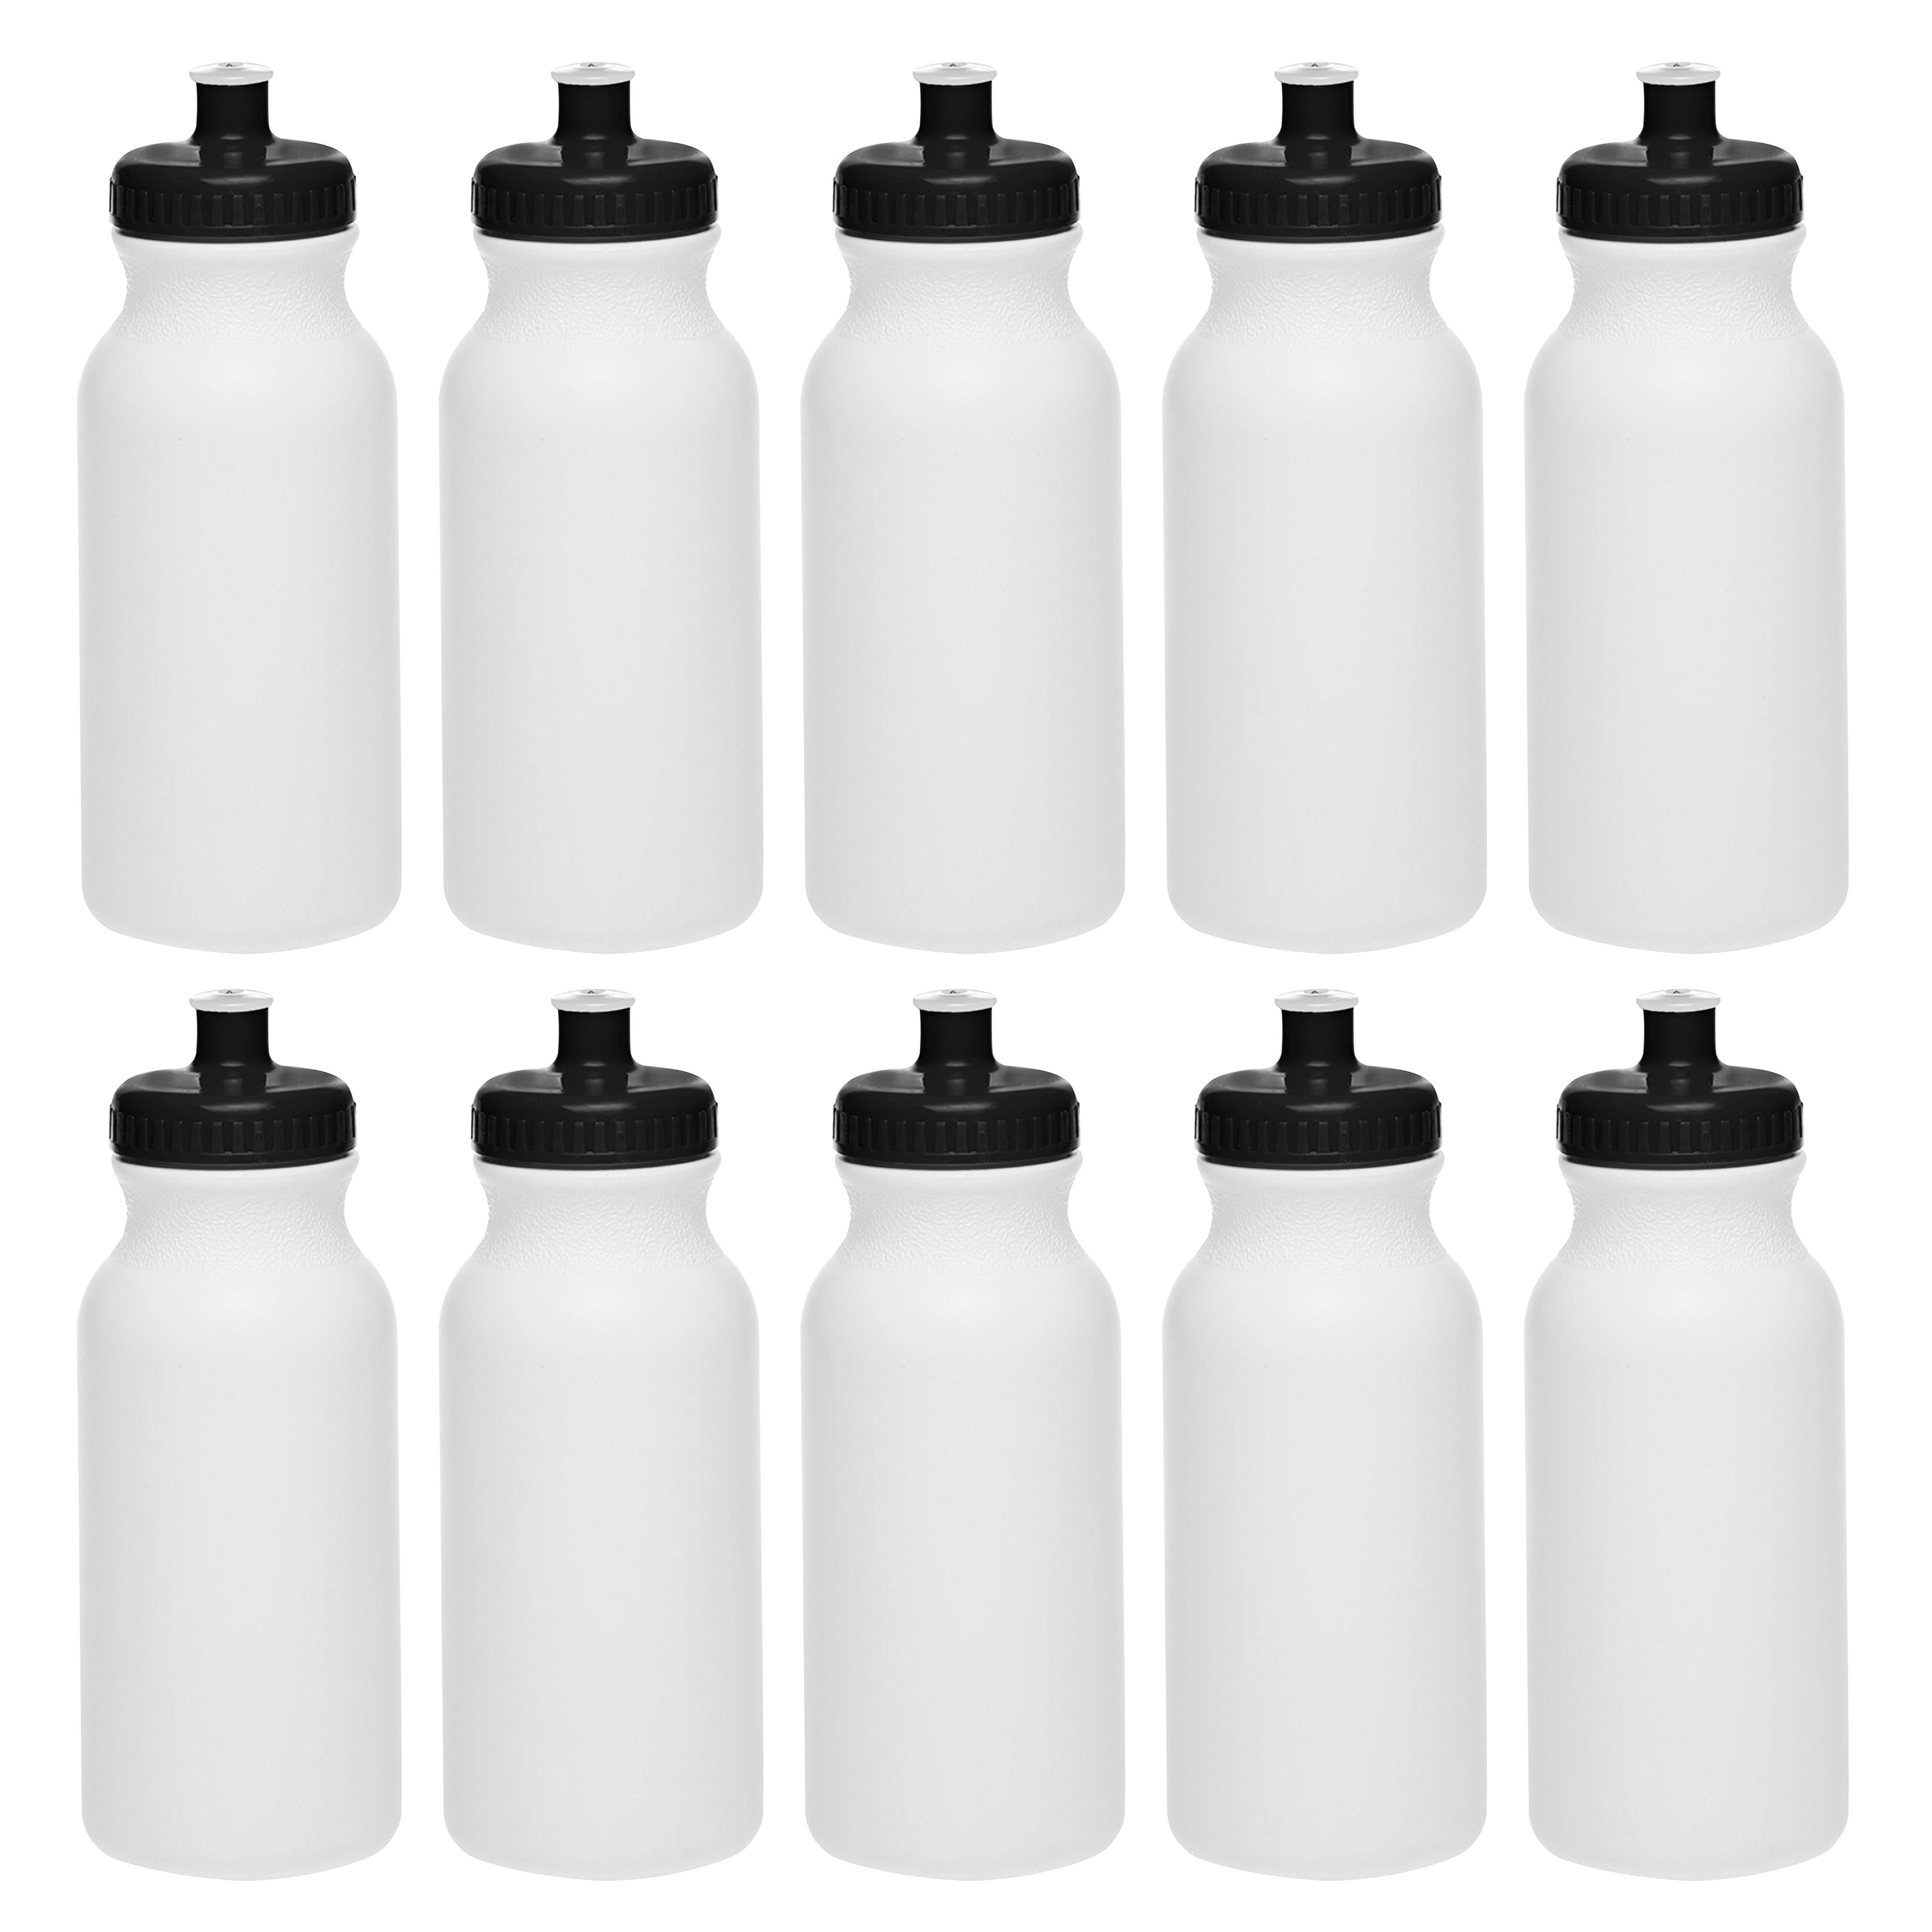 CSBD 20oz Bulk Water Bottles, 10 Pack, Reusable Water Bottles, BPA Fre